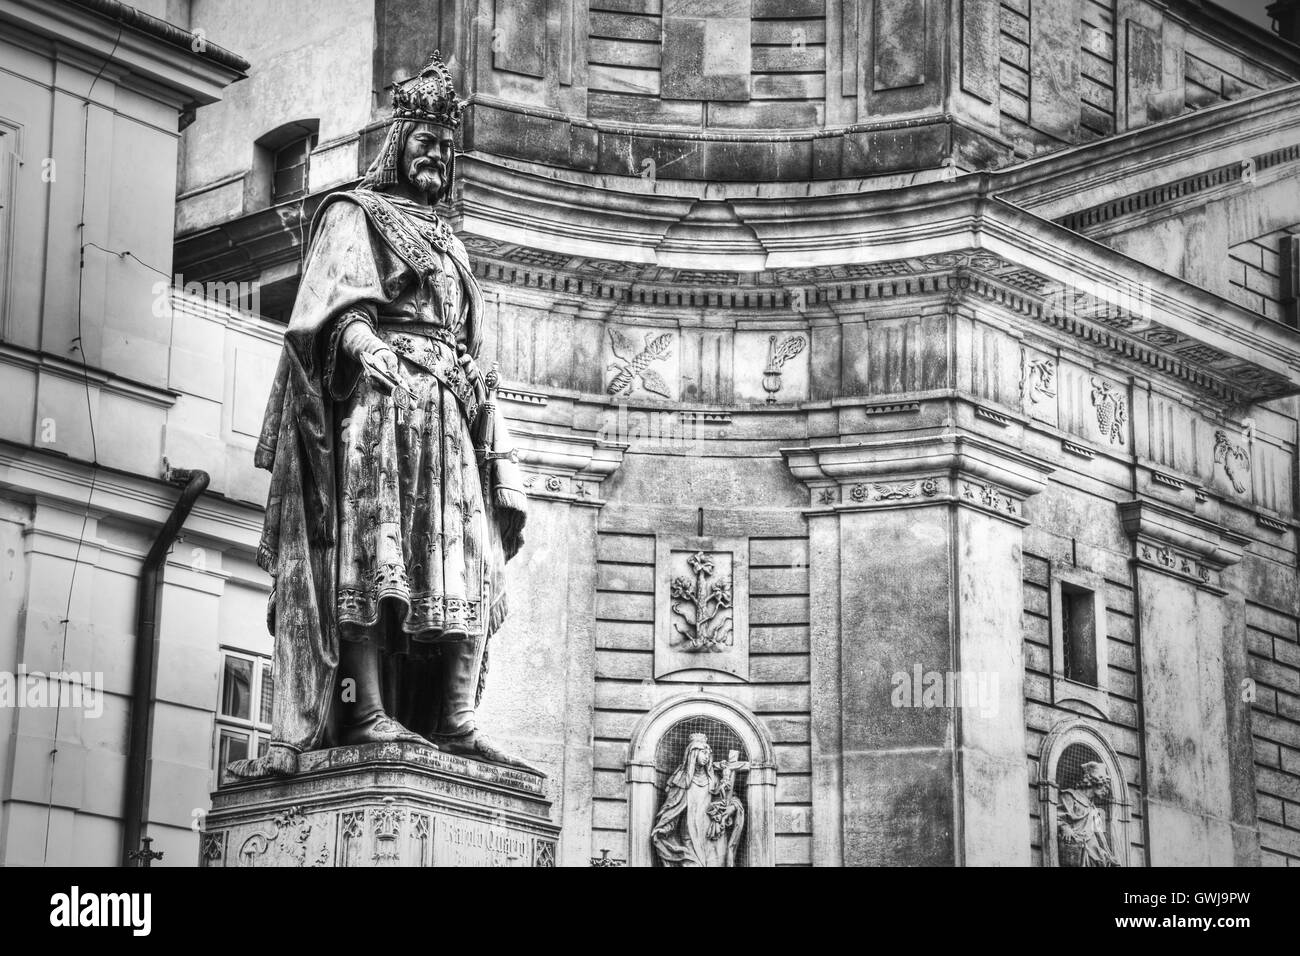 Un monumento di Carlo IV il Ponte Carlo a Praga, Repubblica Ceca. Immagine in bianco e nero. Foto Stock